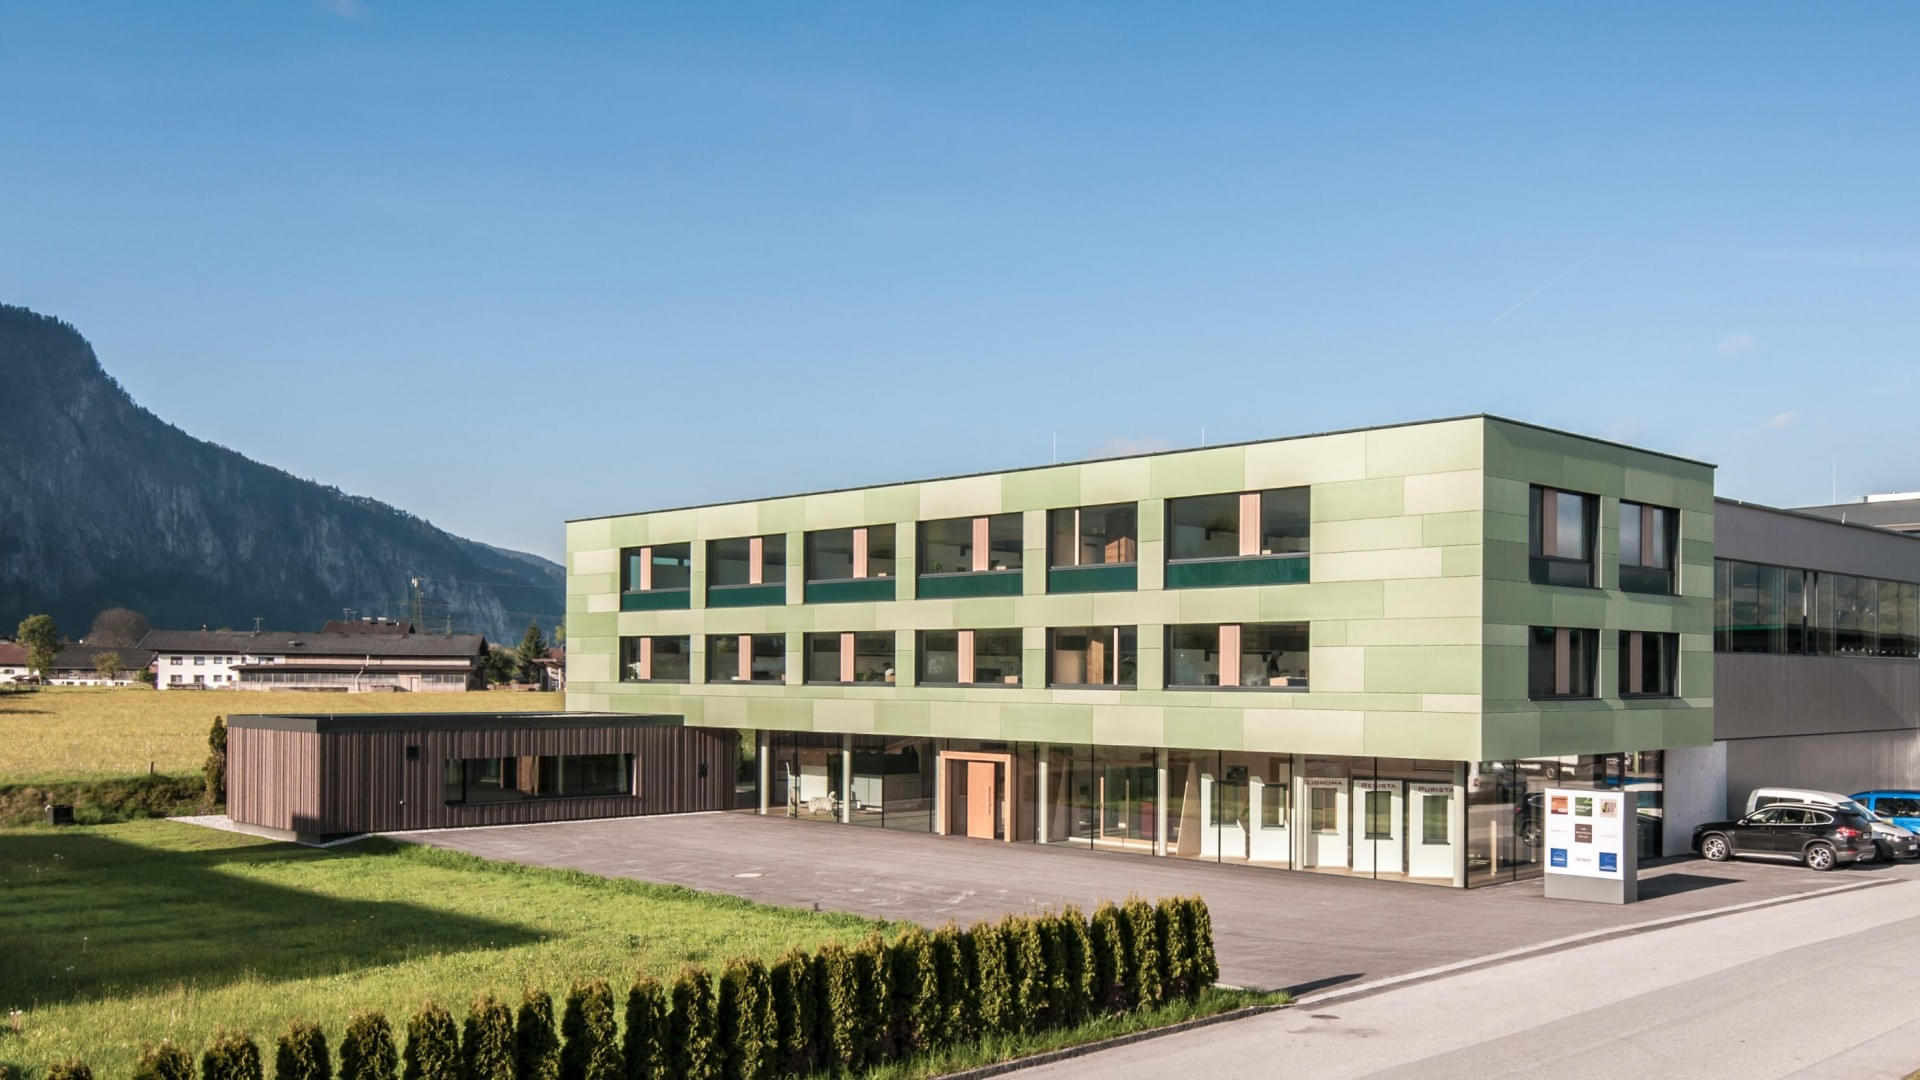 Der Stammsitz der Unternehmensgruppe Freisinger befindet sich in Ebbs in Tirol. Das Unternehmen besteht aus 10 Einzelfirmen und beschäftigt derzeit rund 150 Mitarbeiter:innen. 